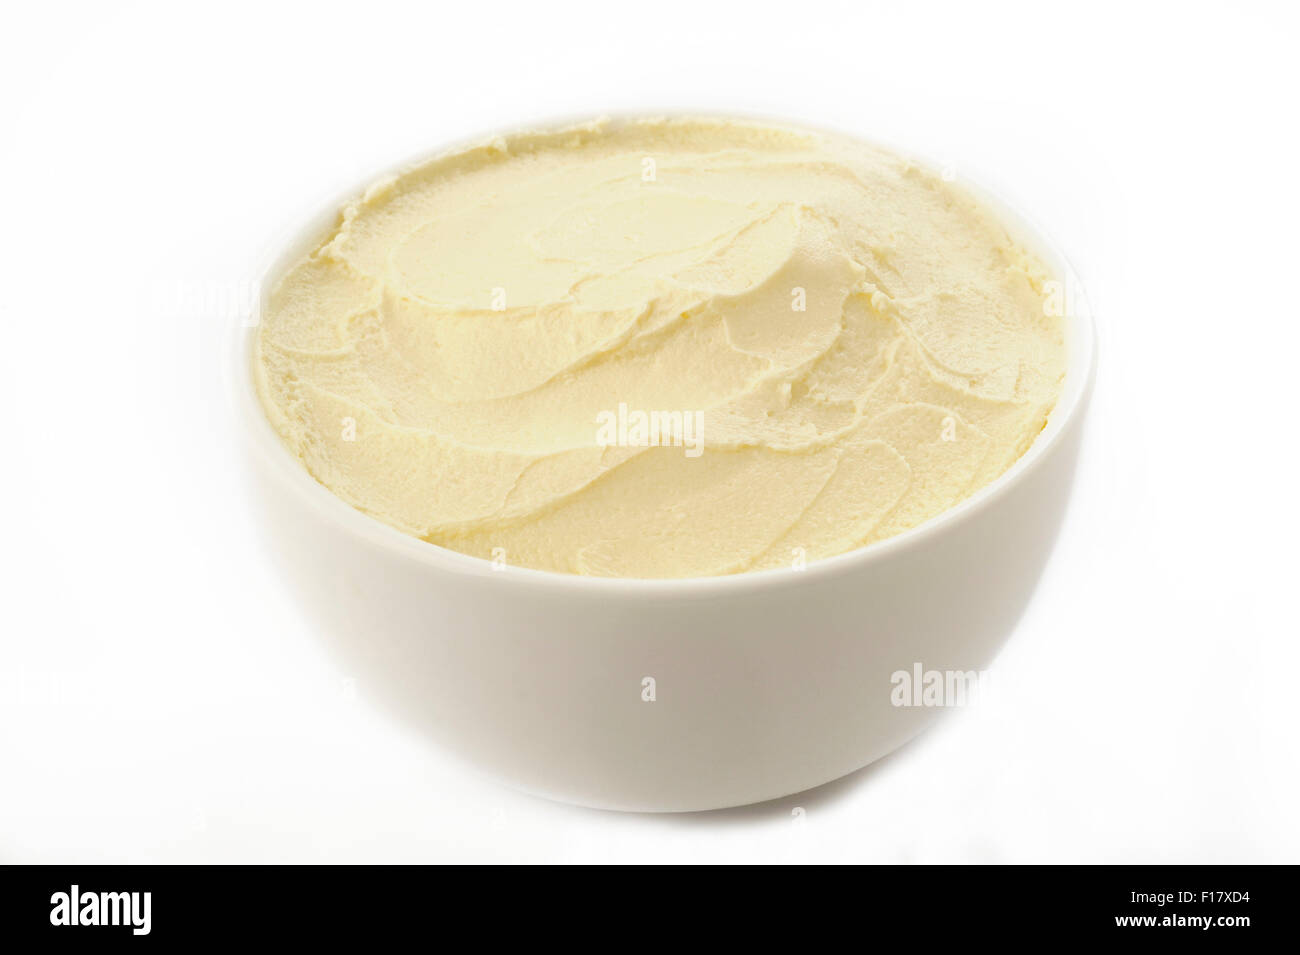 Le fromage à la crème dans un bol blanc Banque D'Images